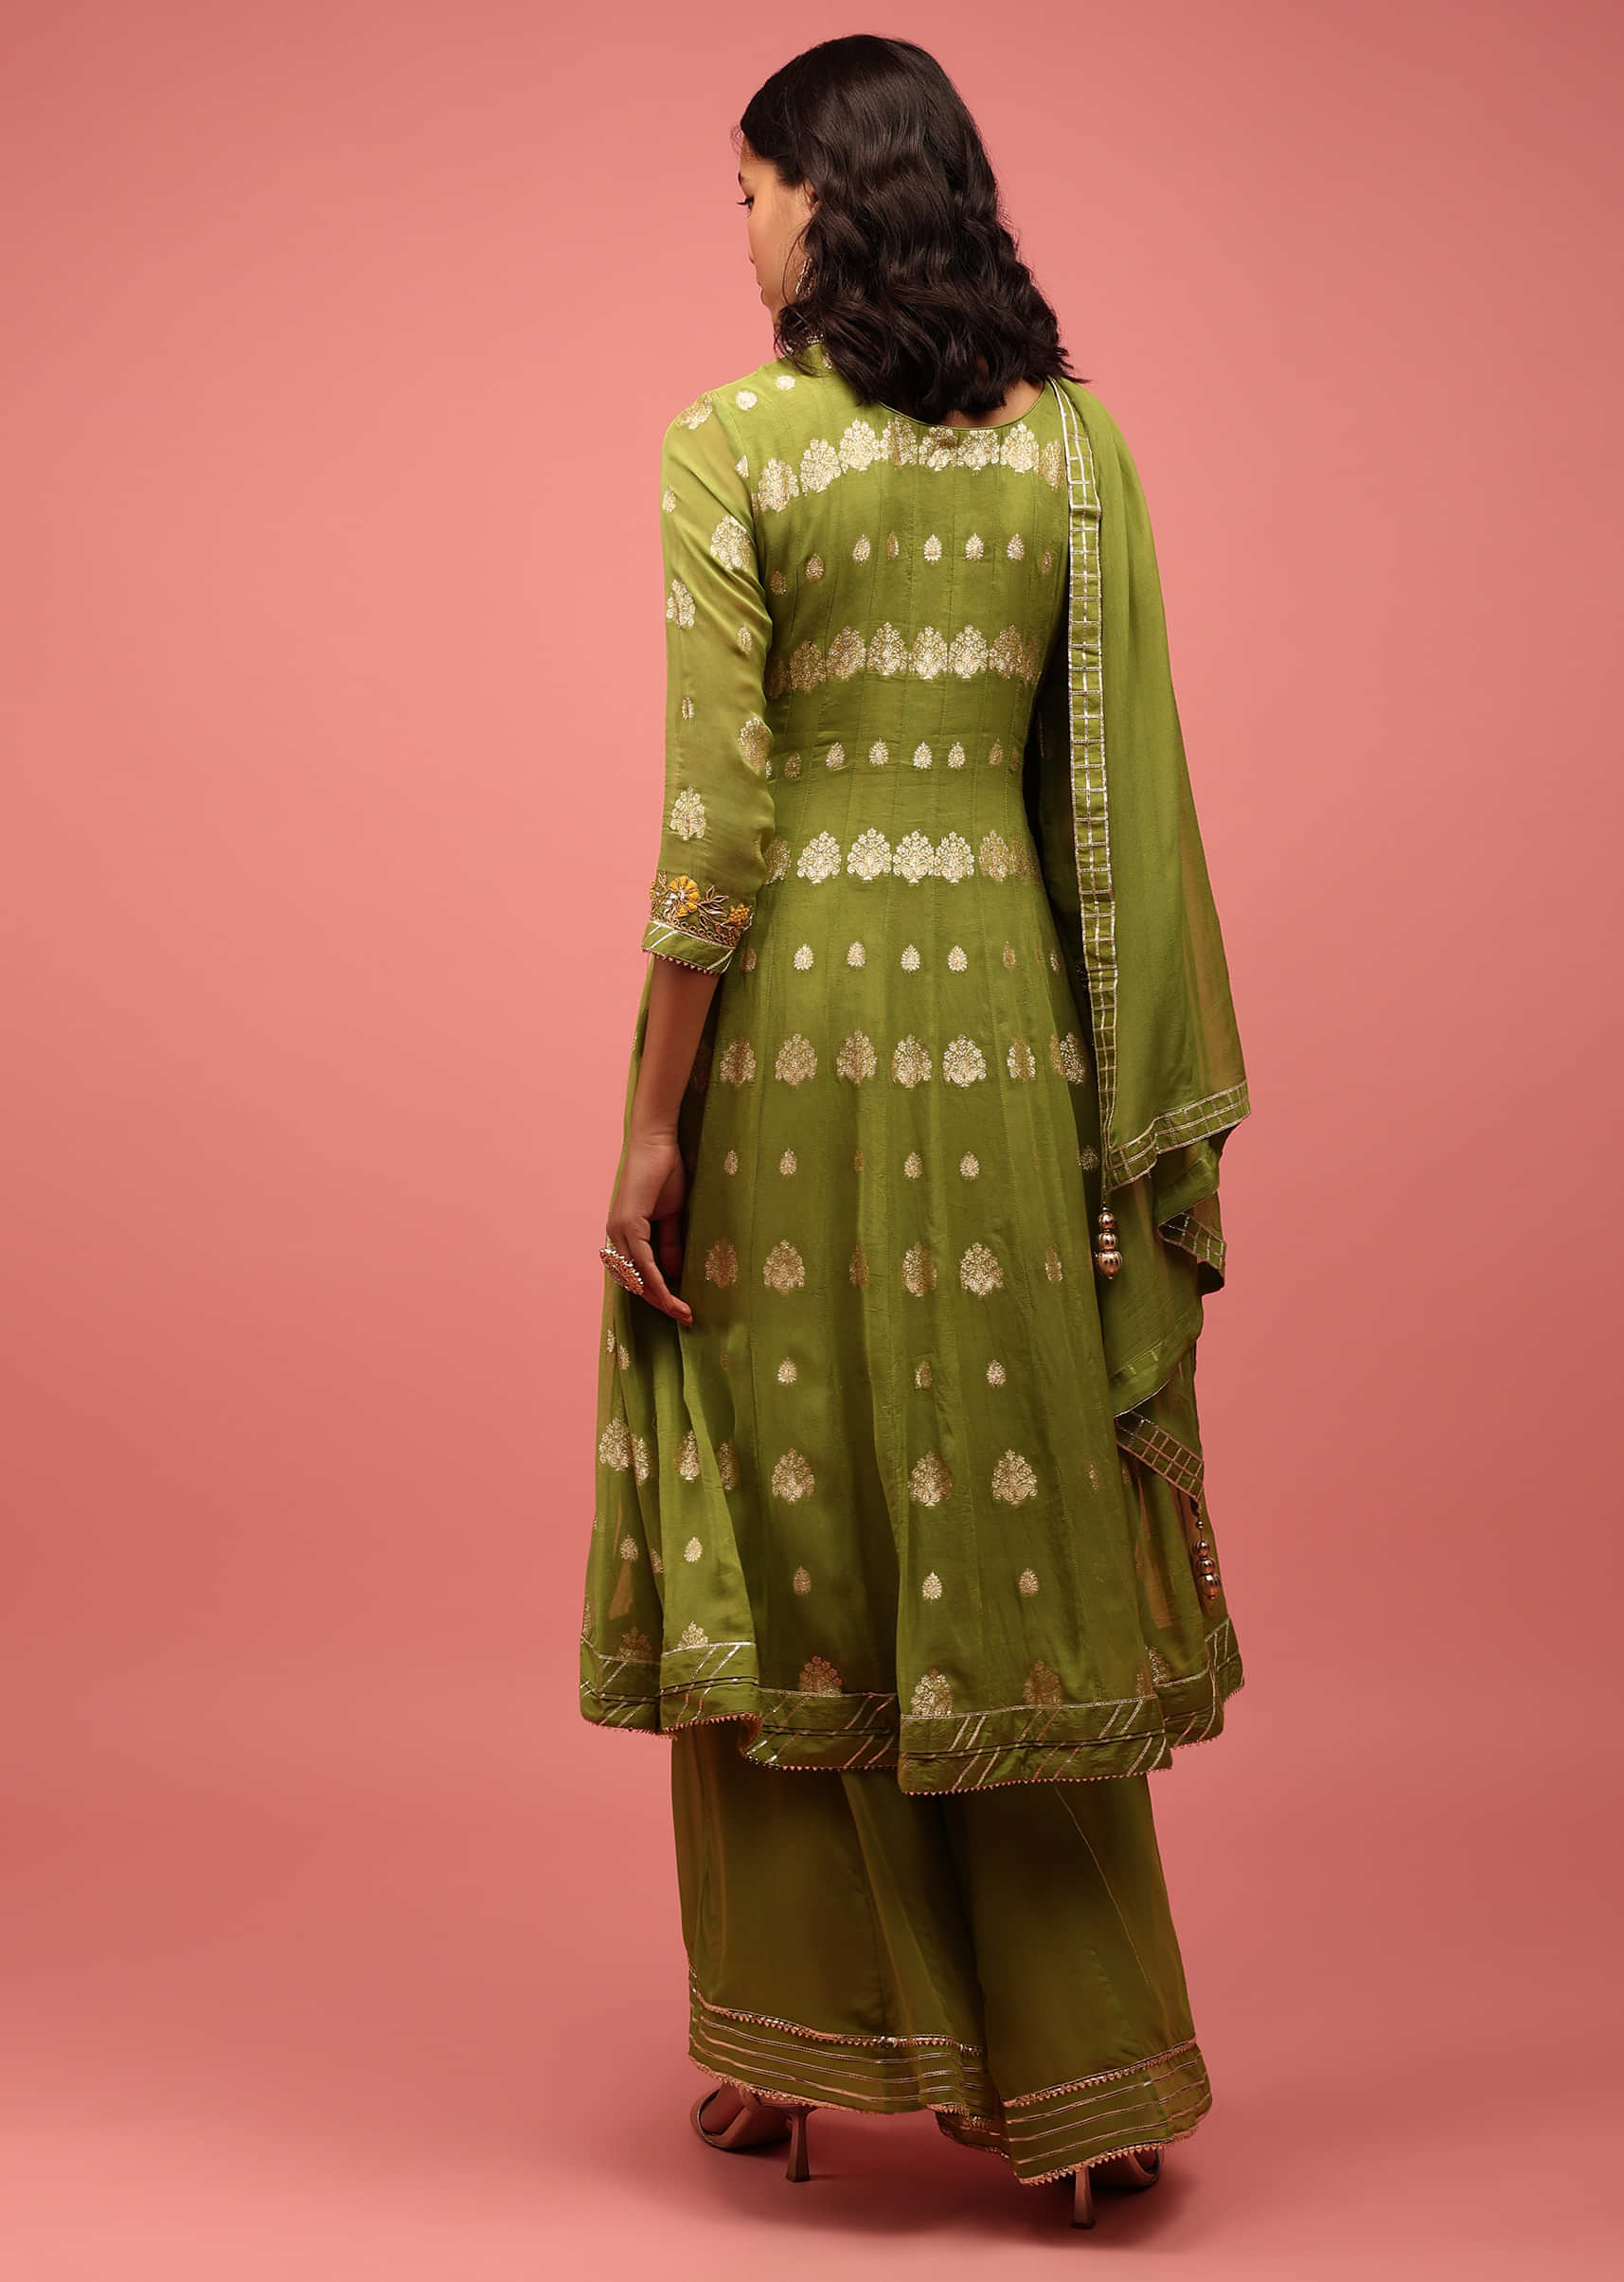 Olive Green Anarkali Suit Set In Banarasi Georgette, Embellished With Brocade And Zardosi Work